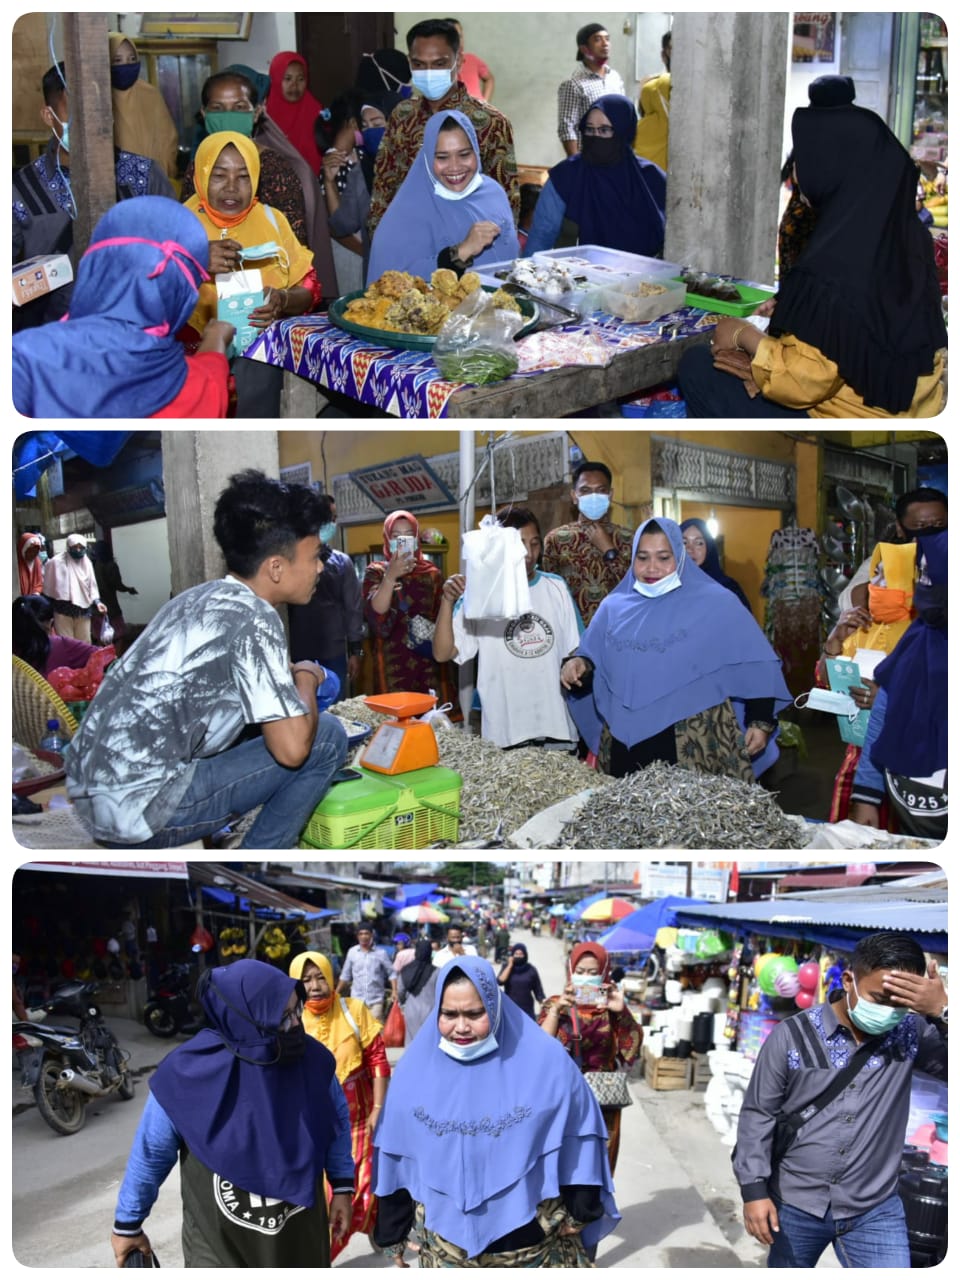 Kasmarni Paslon No. Urut 3 Jemput Aspirasi Pedagang di Pasar Pinggir